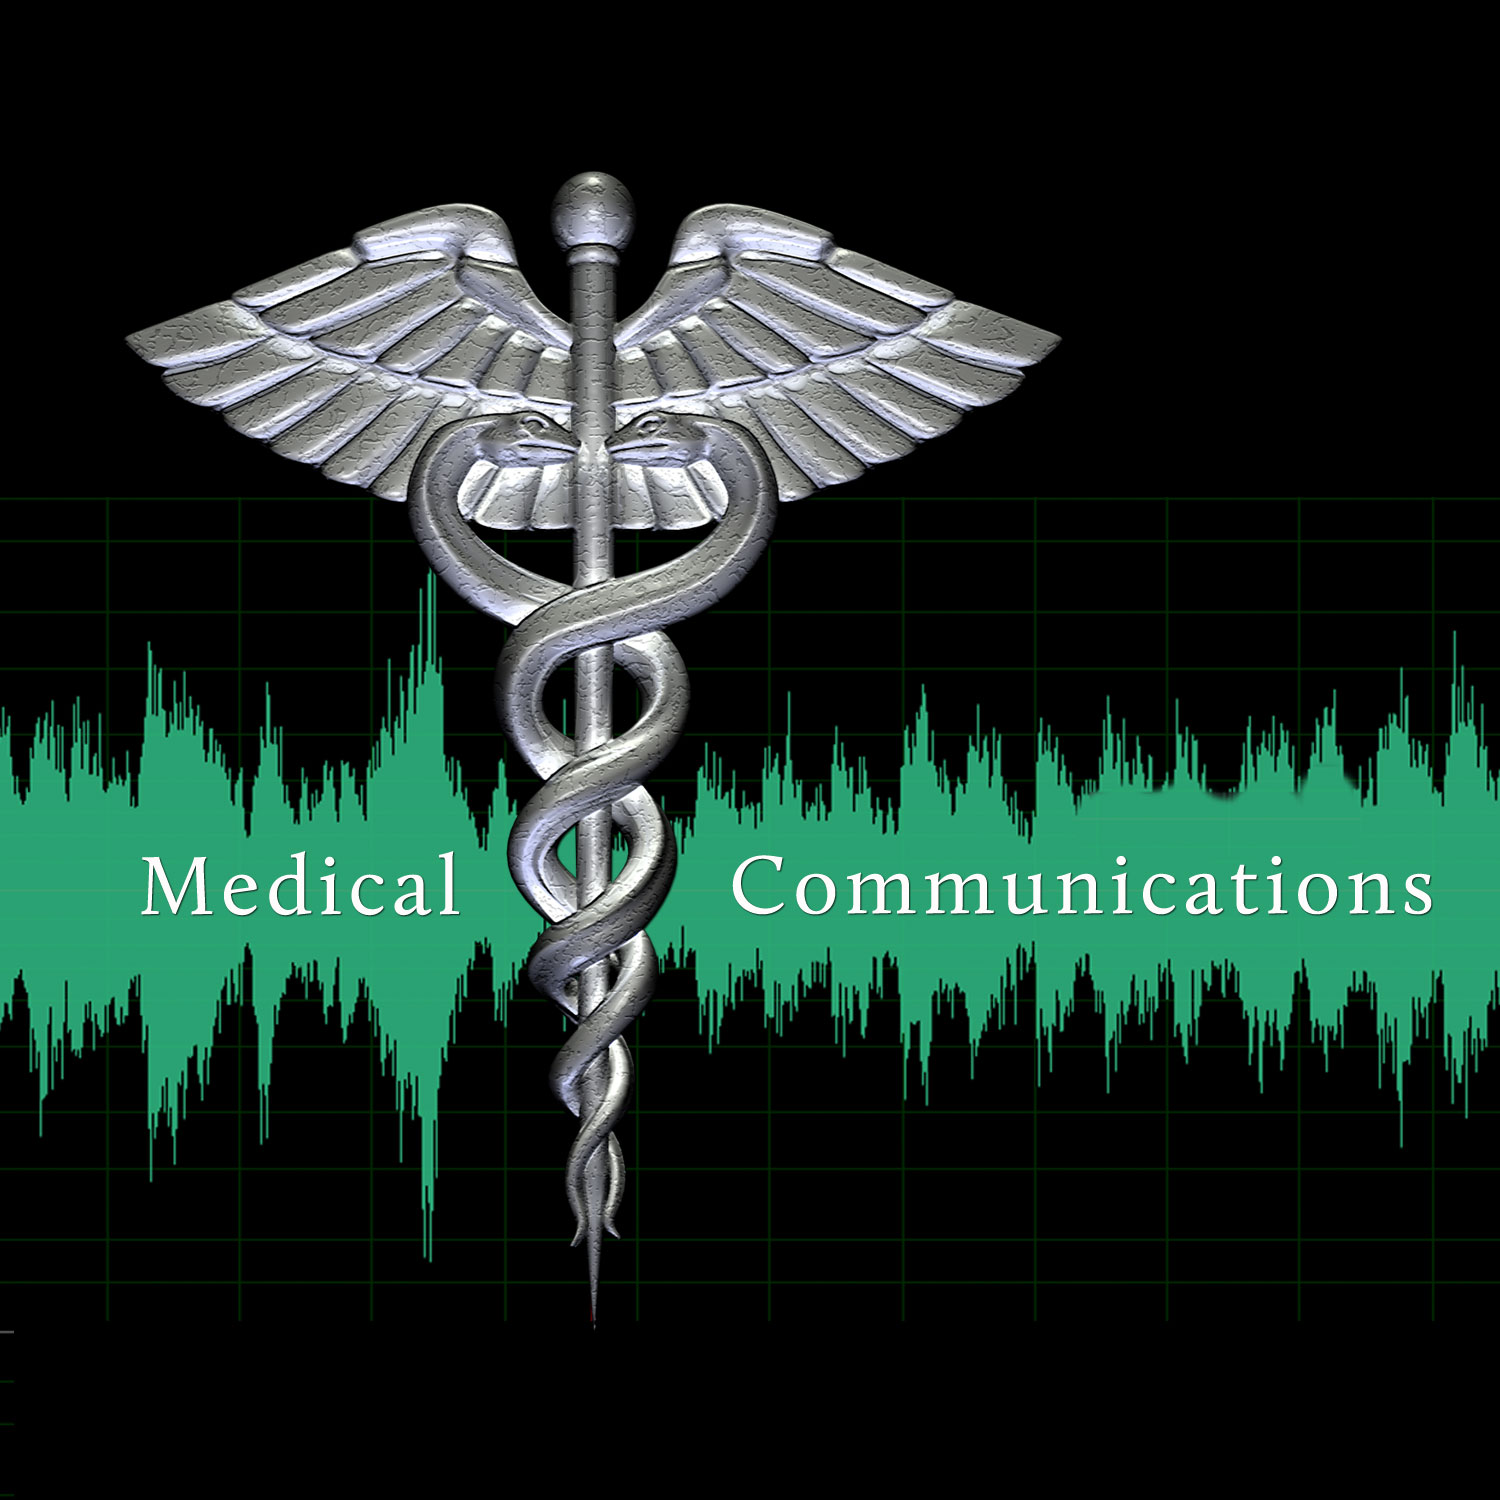 Medical Communications